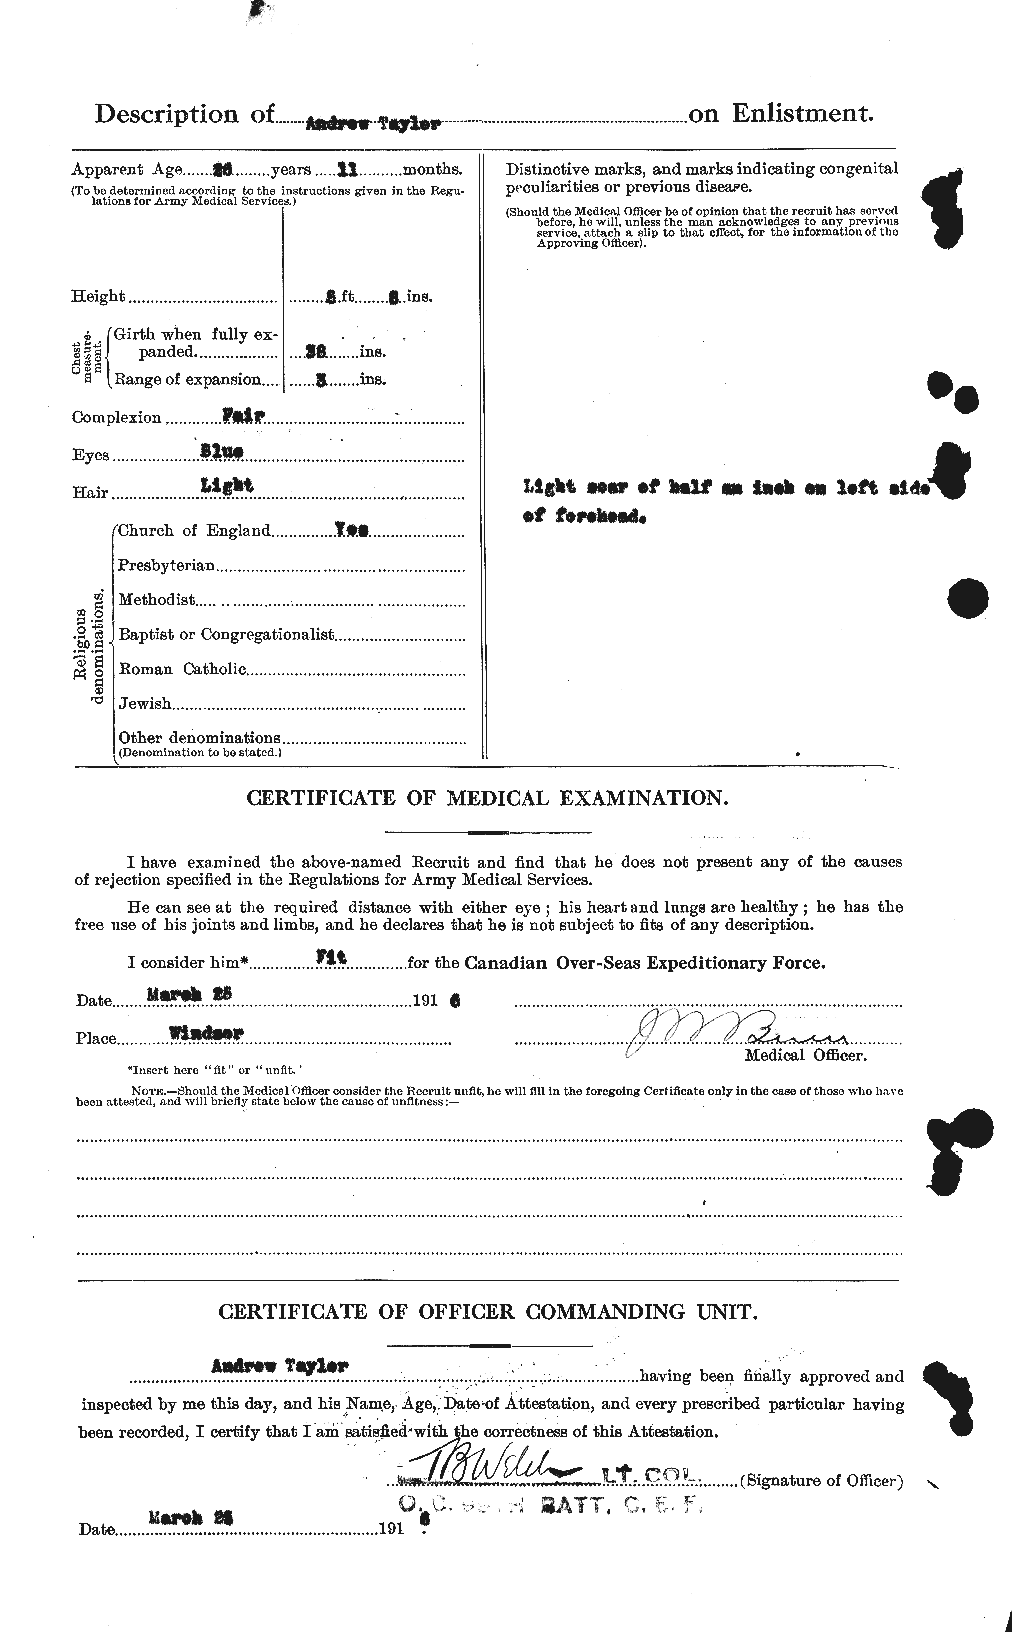 Dossiers du Personnel de la Première Guerre mondiale - CEC 626221b